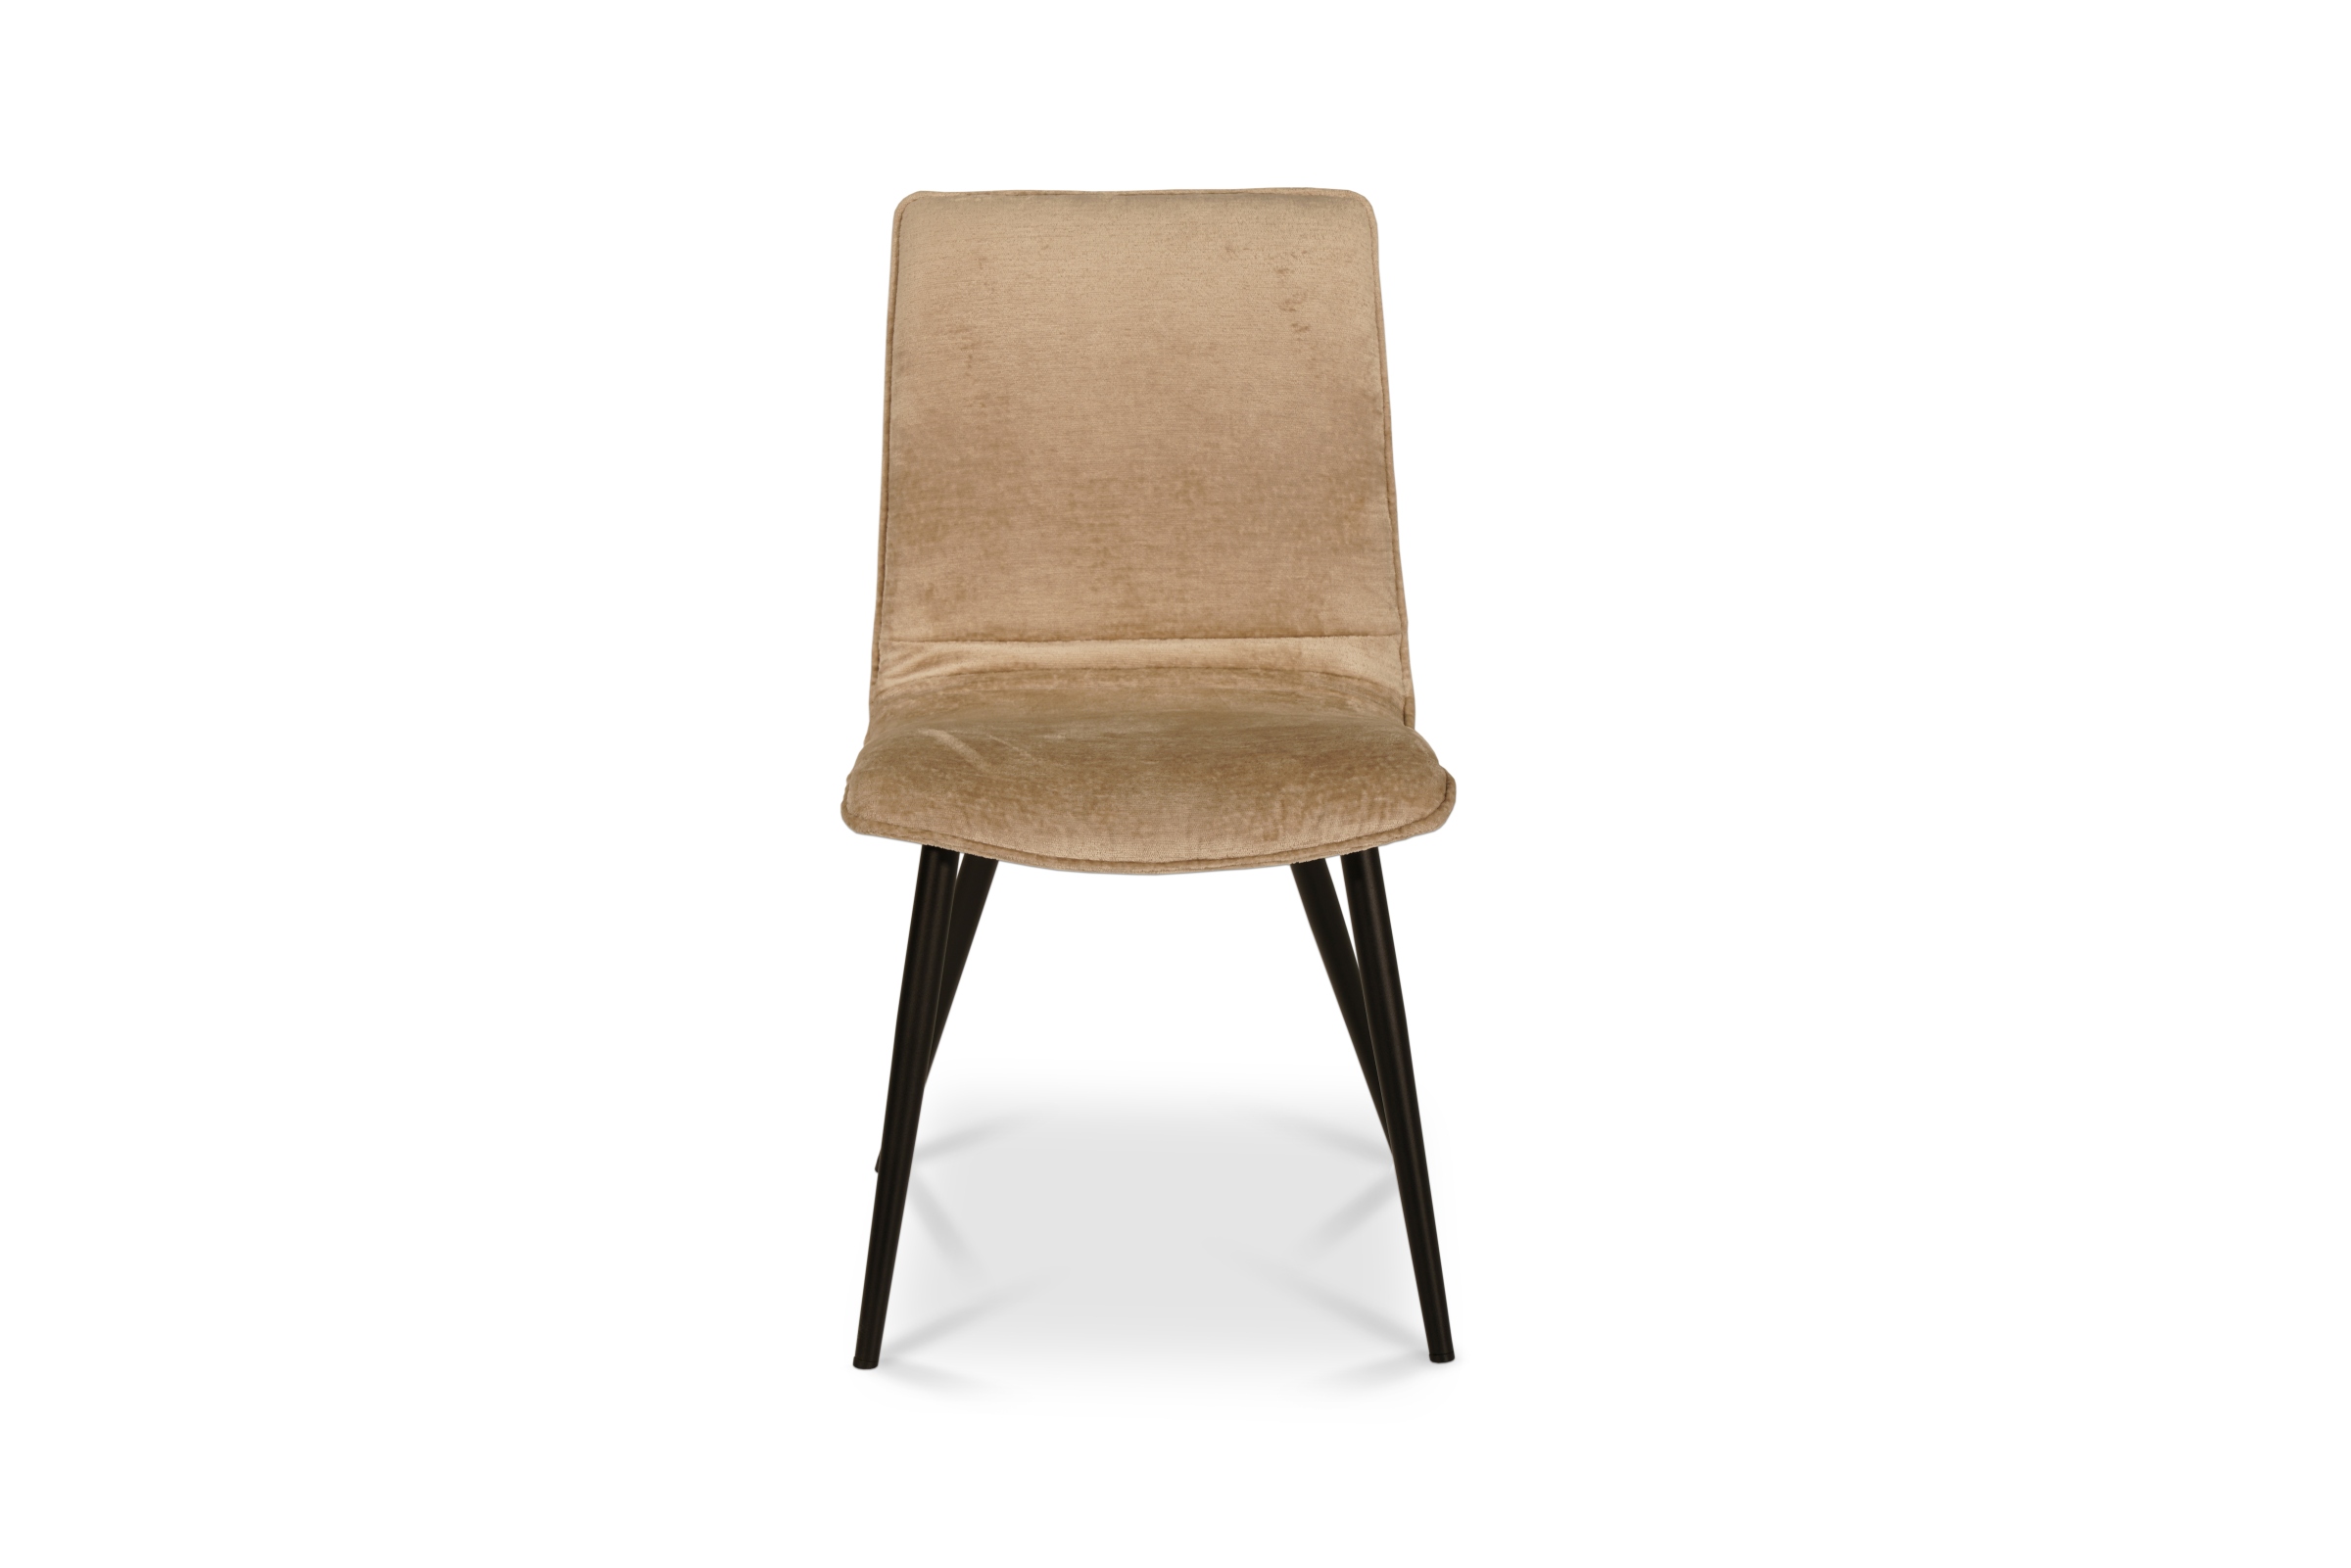 Profilowane krzesło na metalowych nogach wykonane z jasnej tkaniny